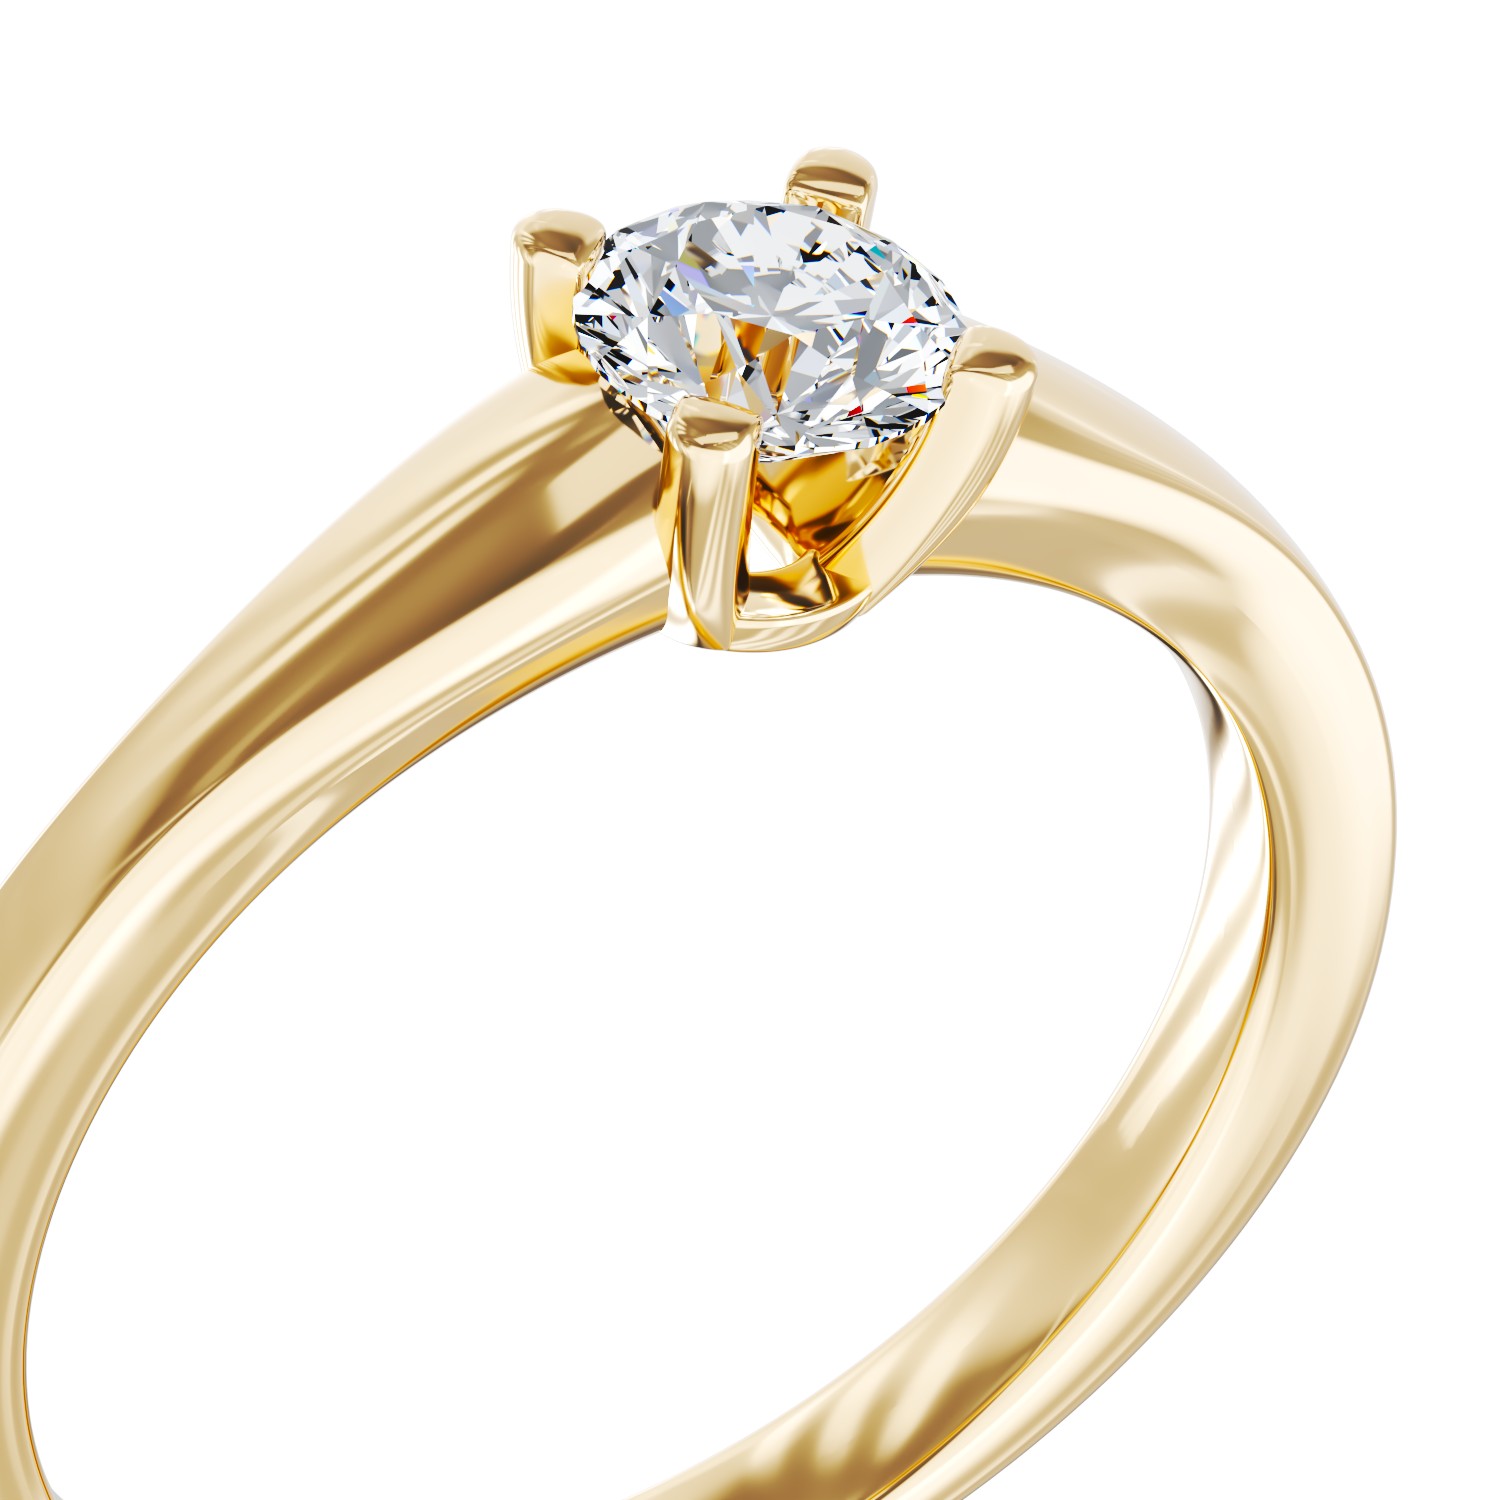 Eljegyzési gyűrű 18K-os sárga aranyból 0,24ct gyémánttal. Gramm: 2,30